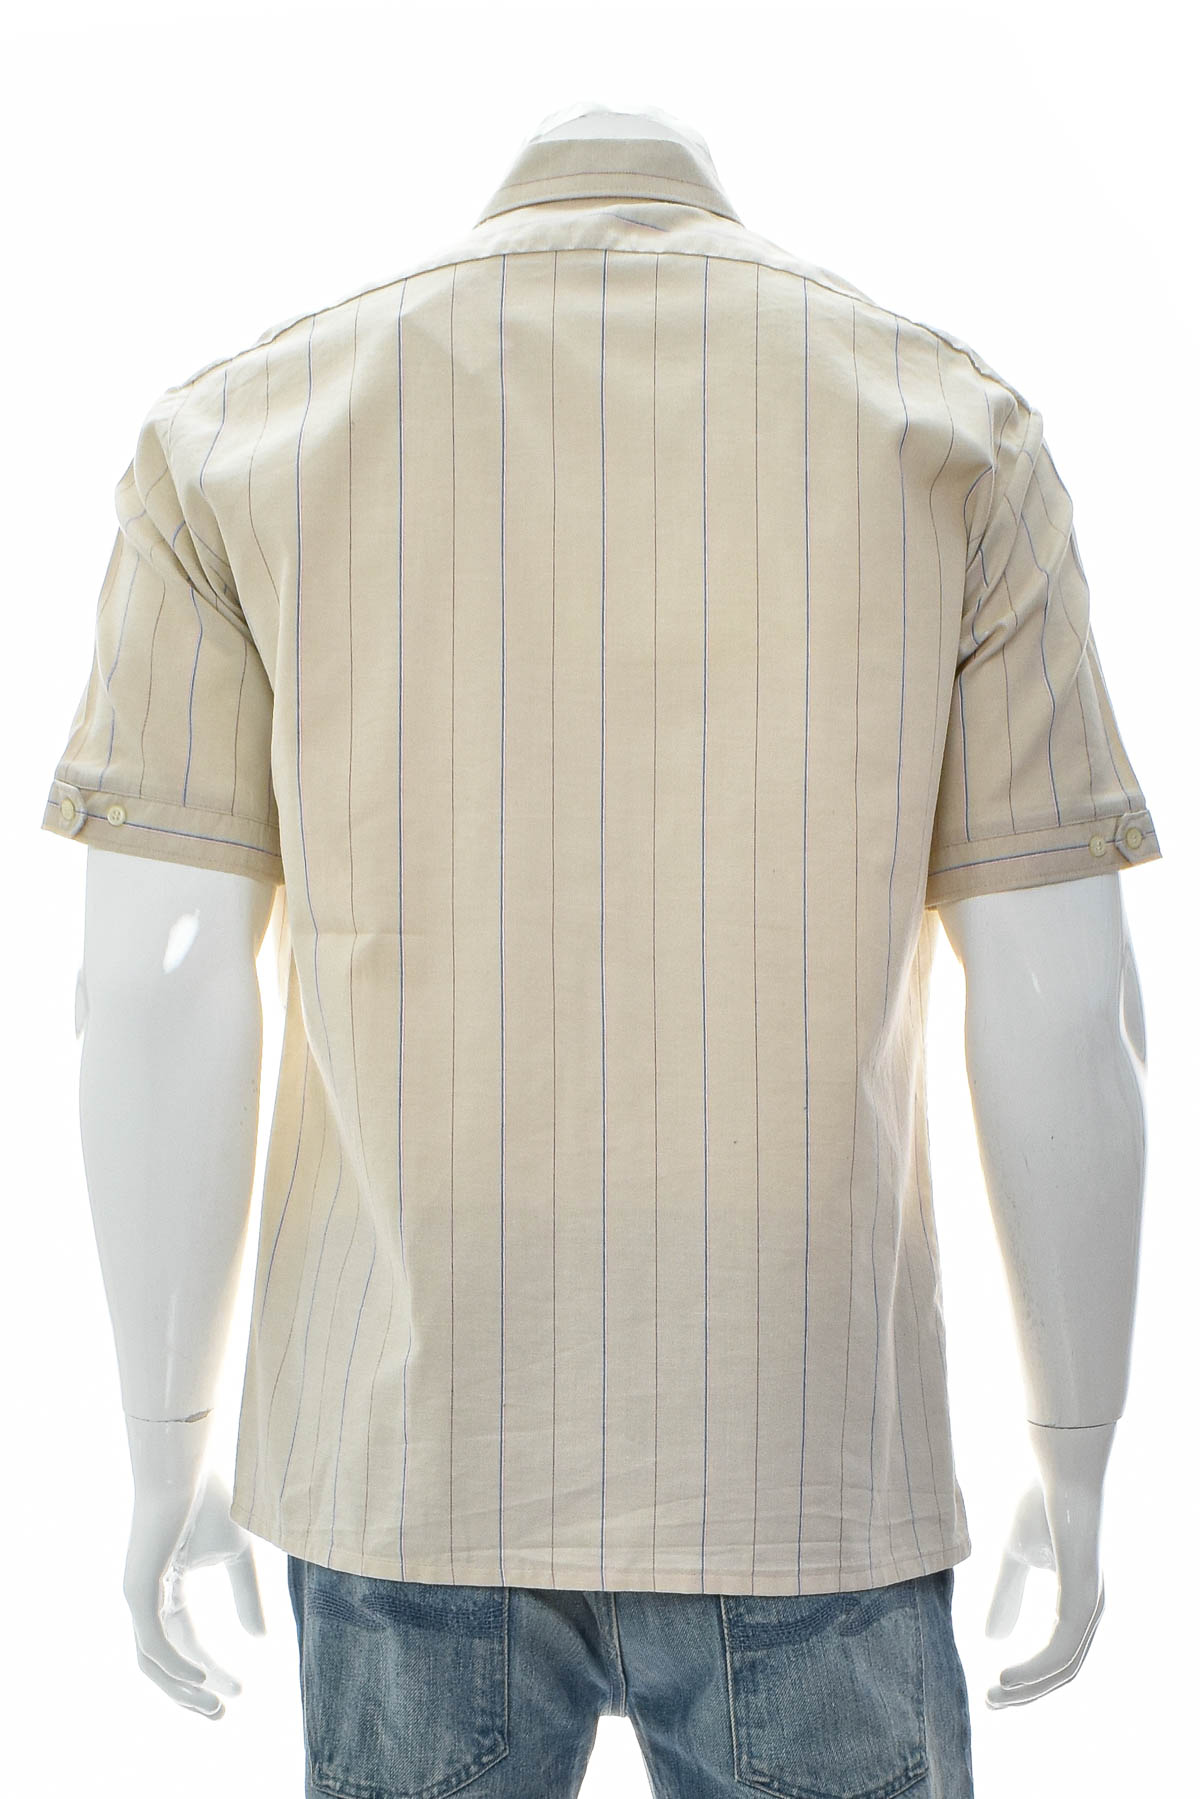 Ανδρικό πουκάμισο - Zuerich - 1